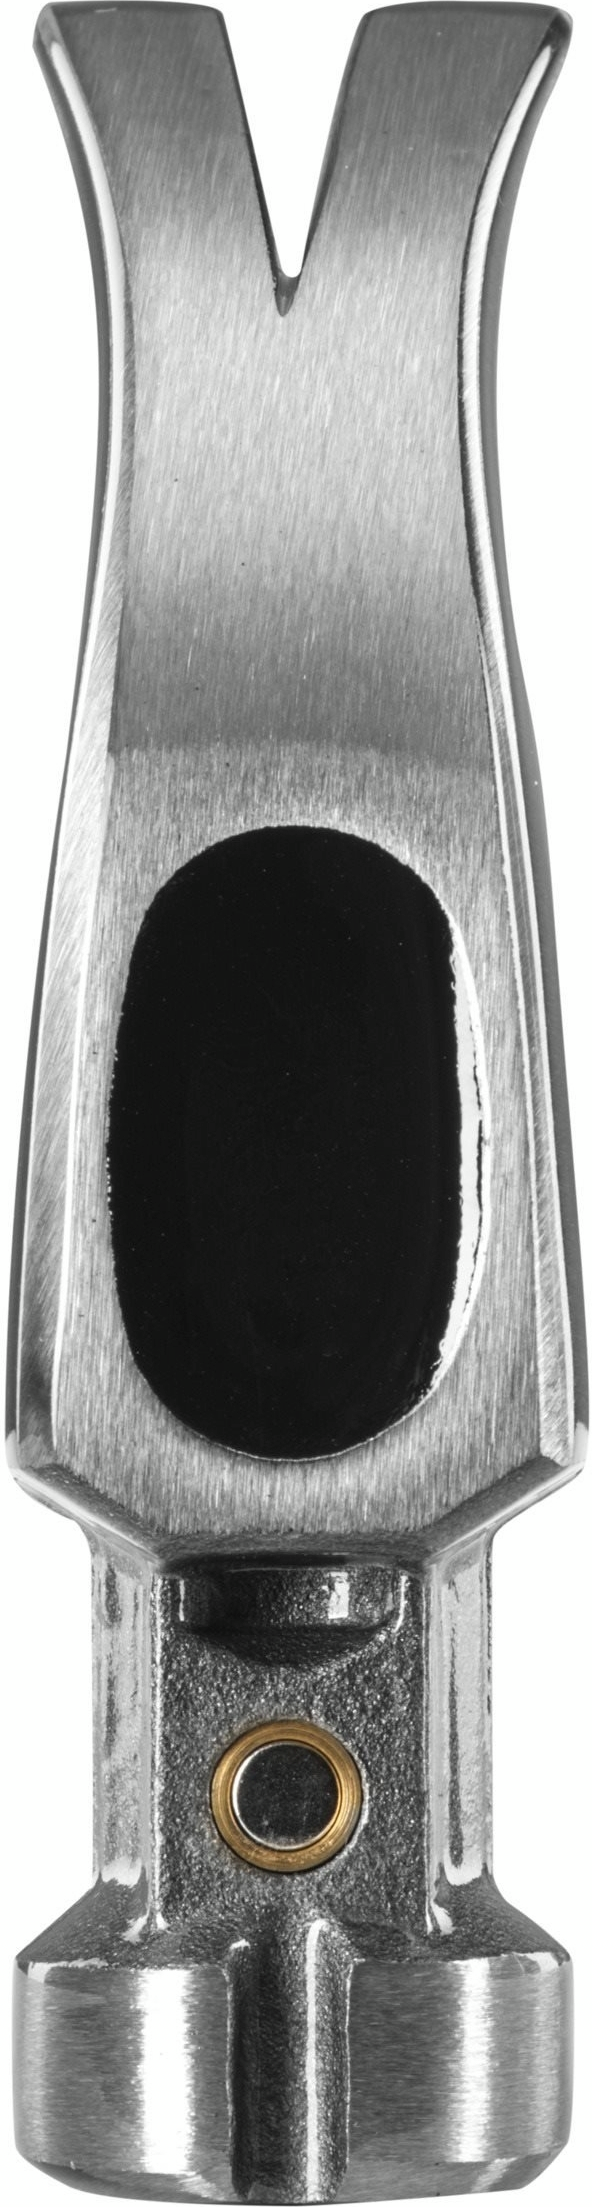 Молоток столярний Ryobi RHHCC450, 450г (5132006033)фото5